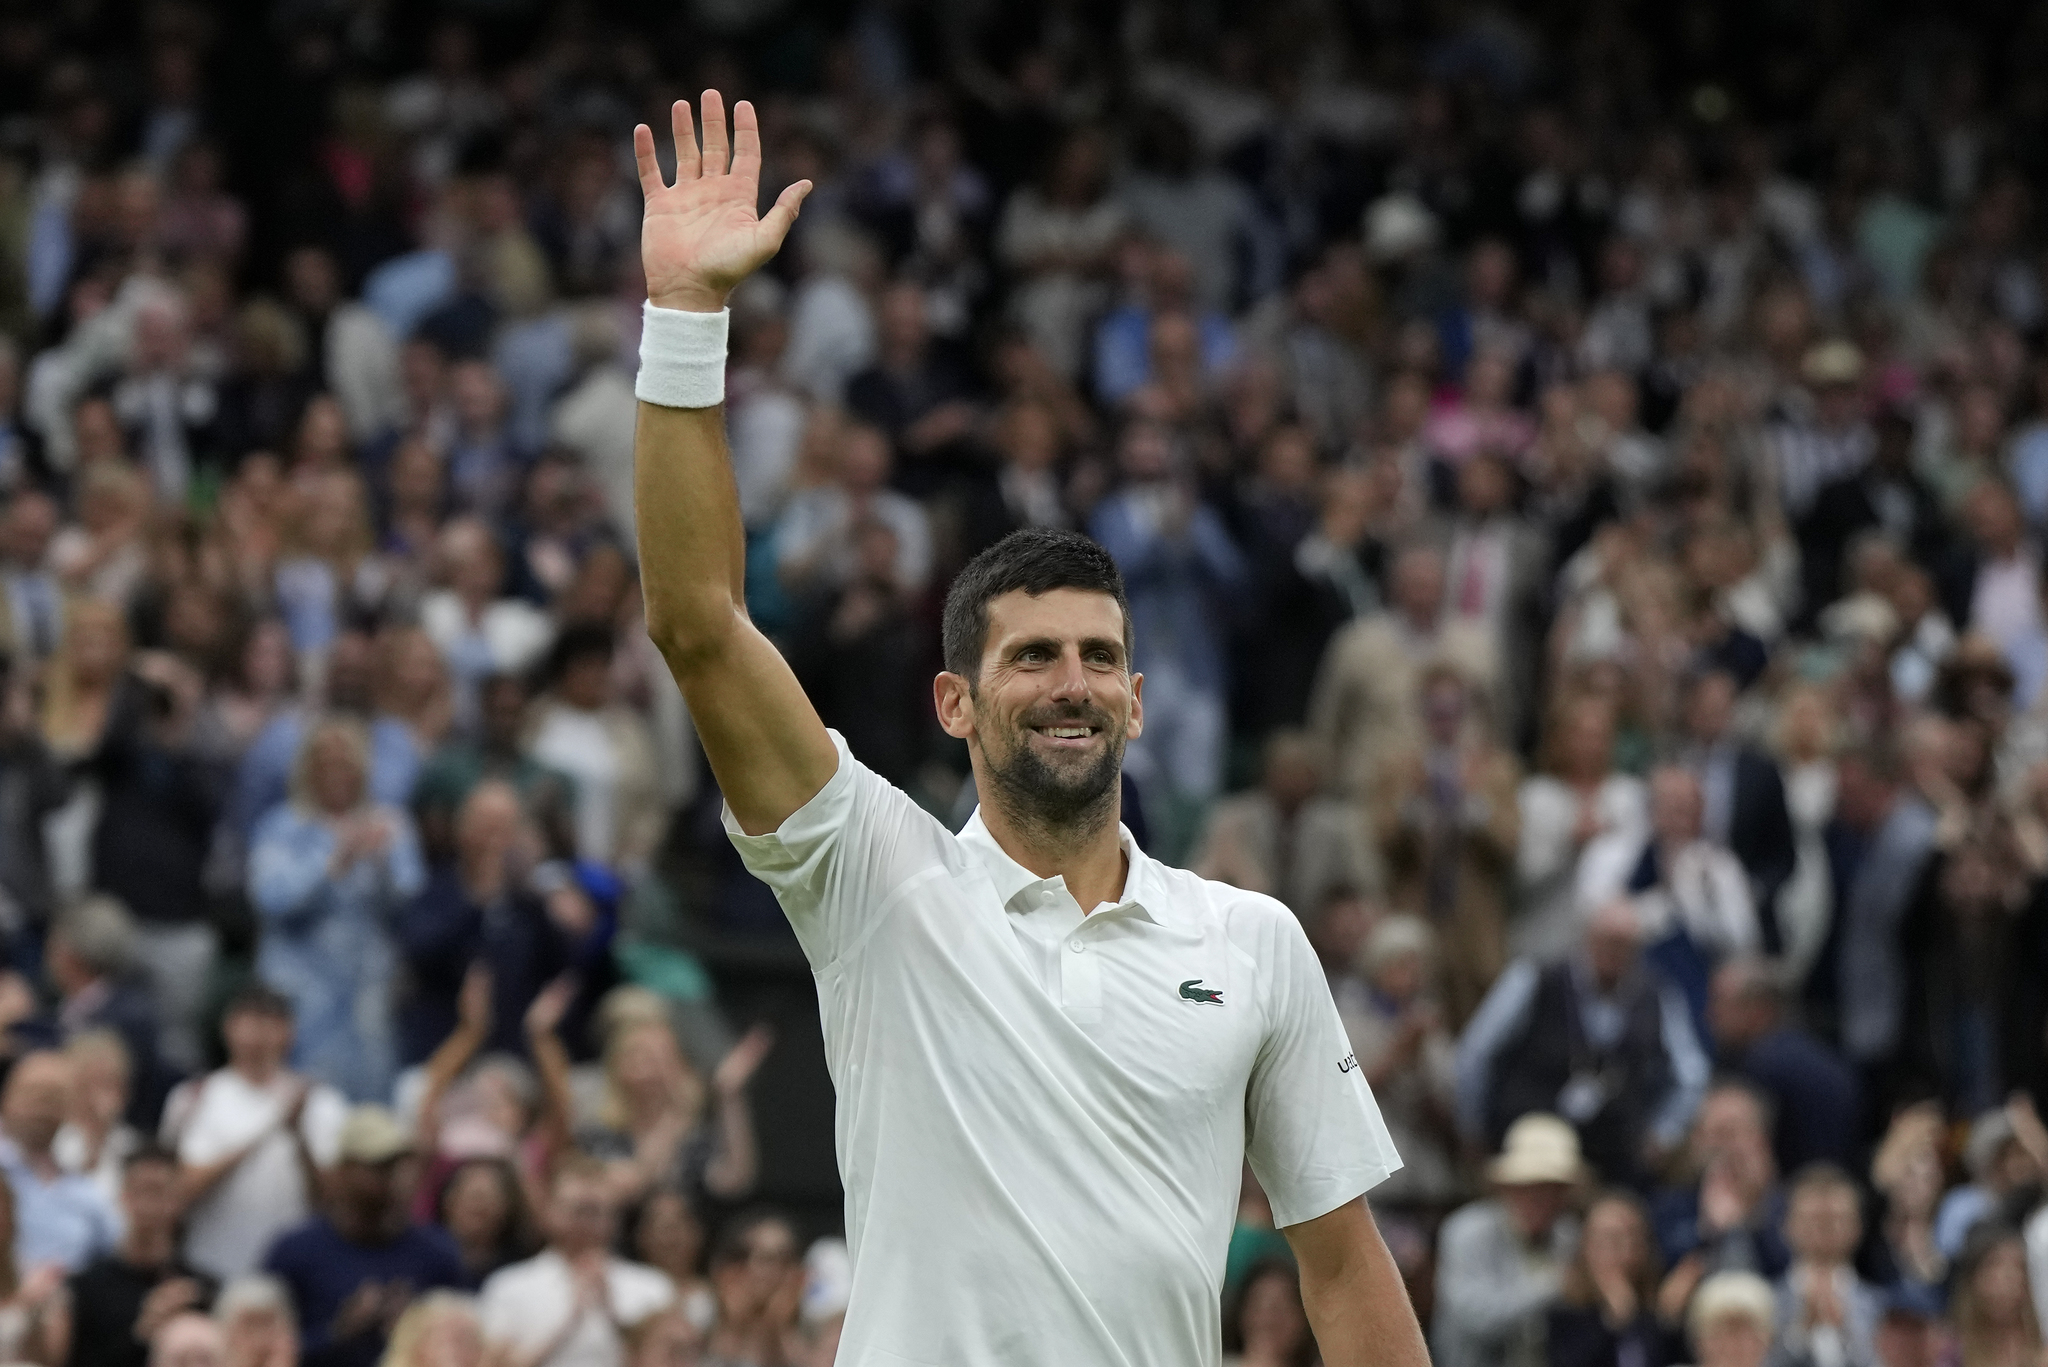 Palmarés de Djokovic: todos los Grand Slams y torneos que ha ganado el tenista serbio